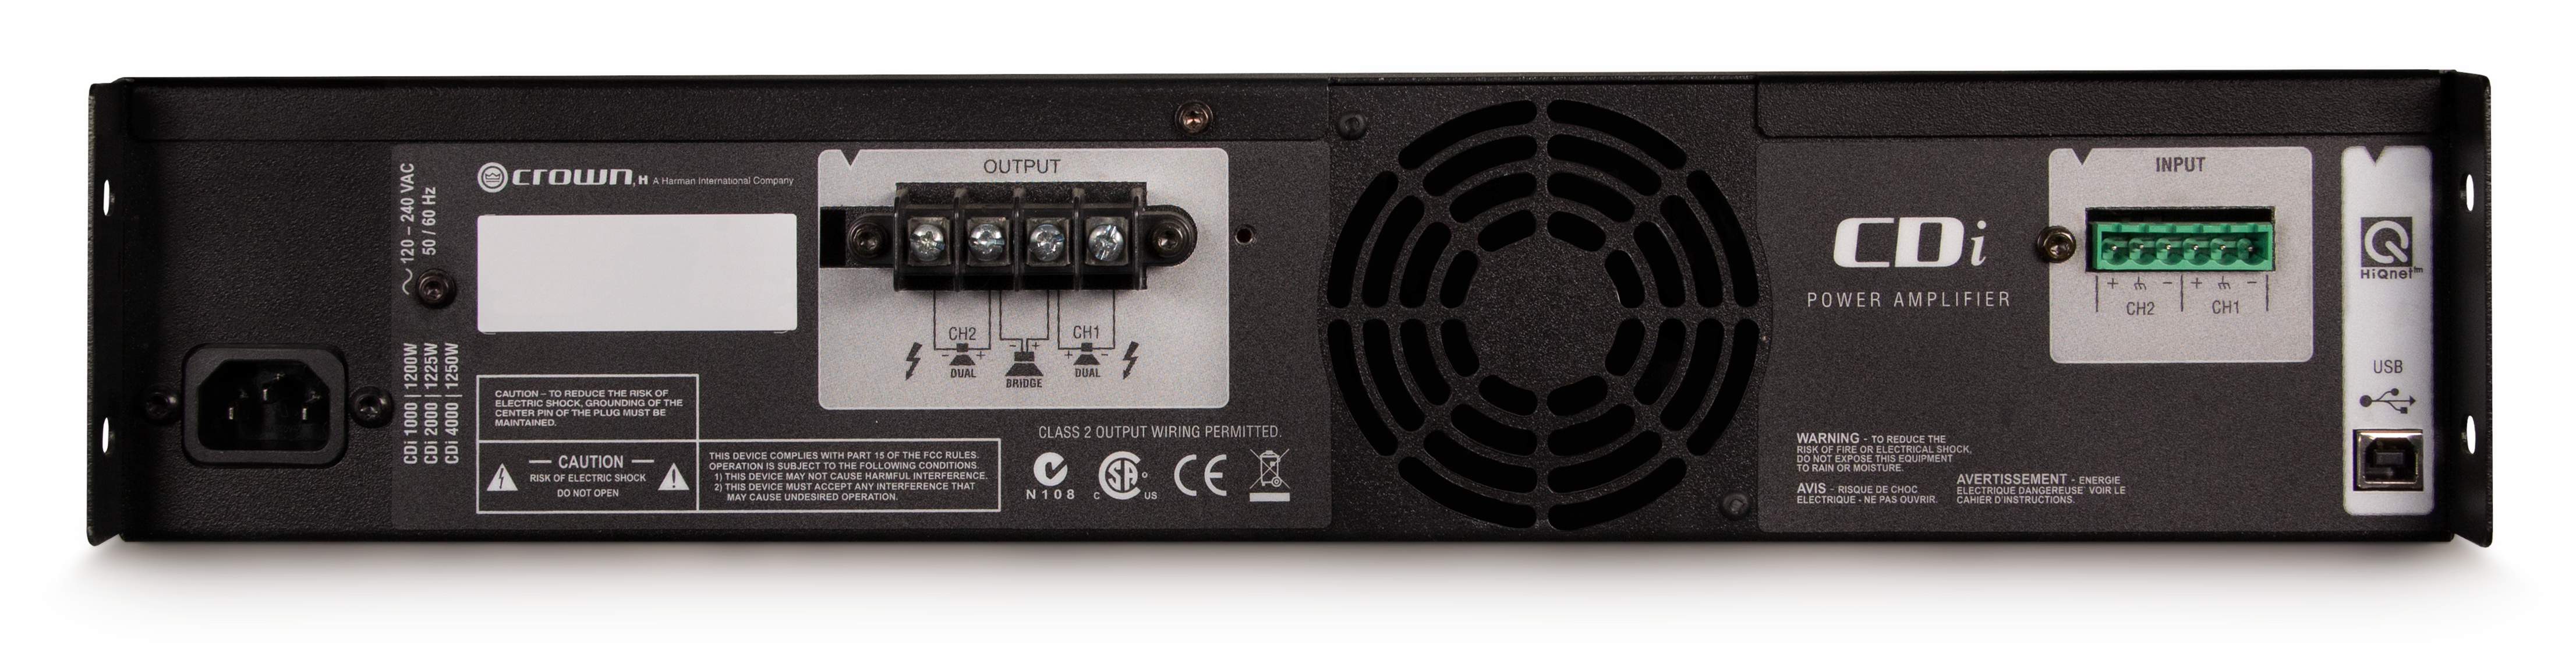 CROWN CDi 4000 Amplificador de potencia 2 canales,  1200 W a 4 Ω, 70 V/140 V